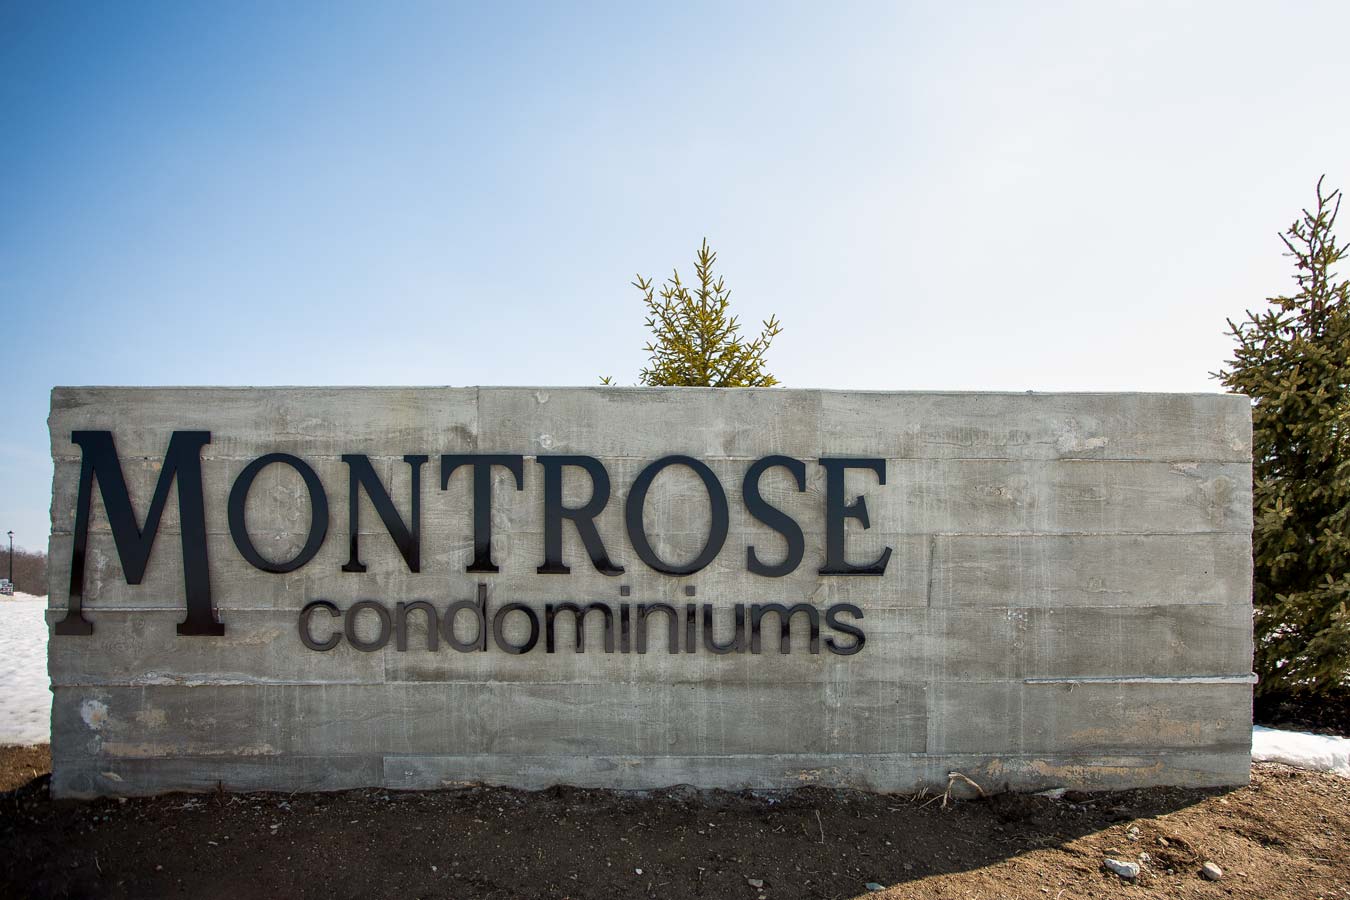 Montrose Condominiums sign